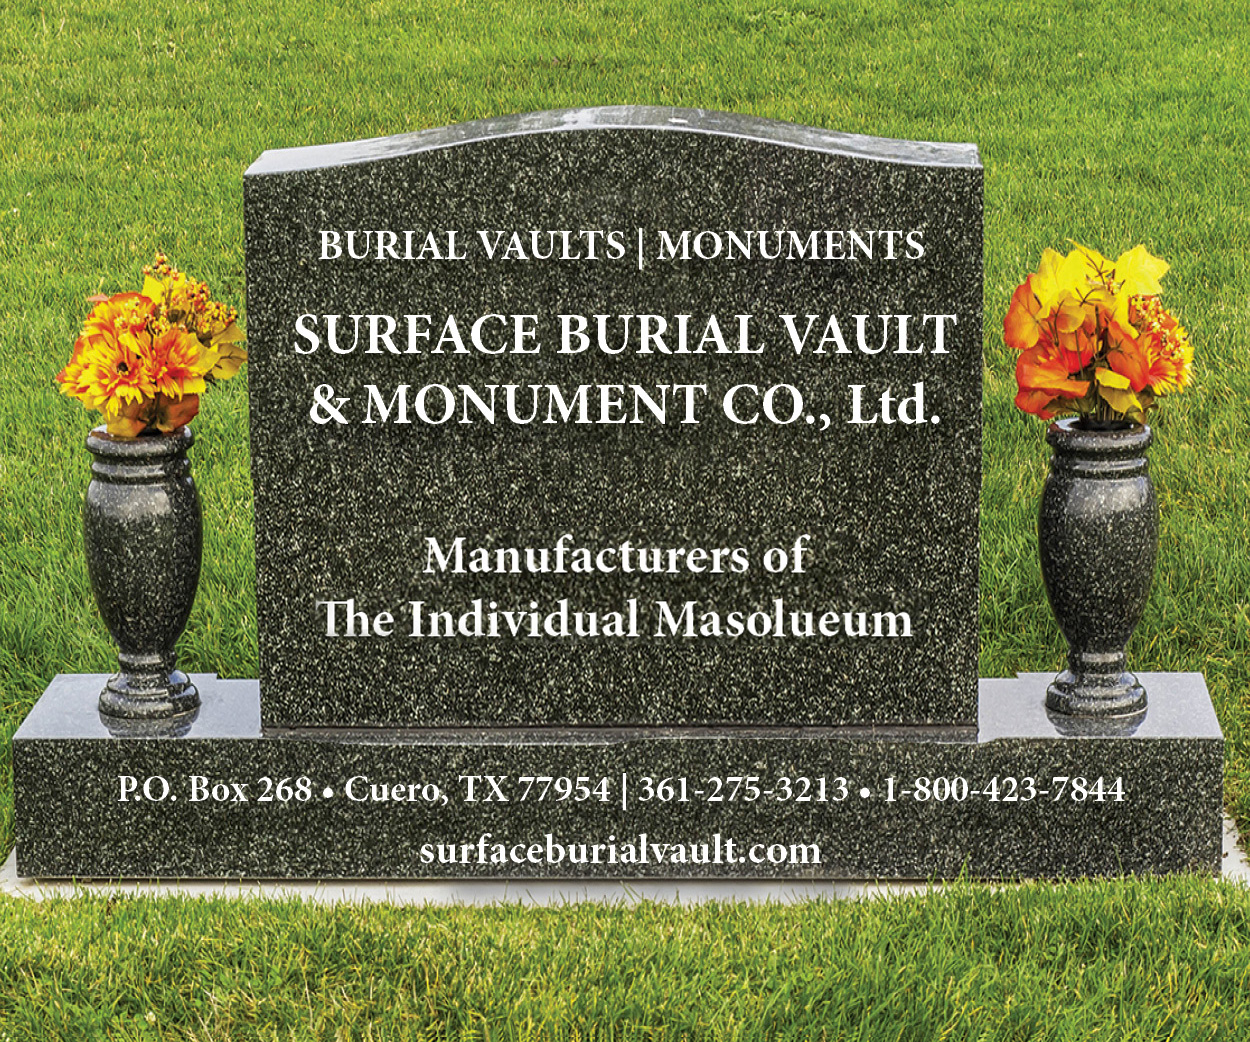 Burial Vaults